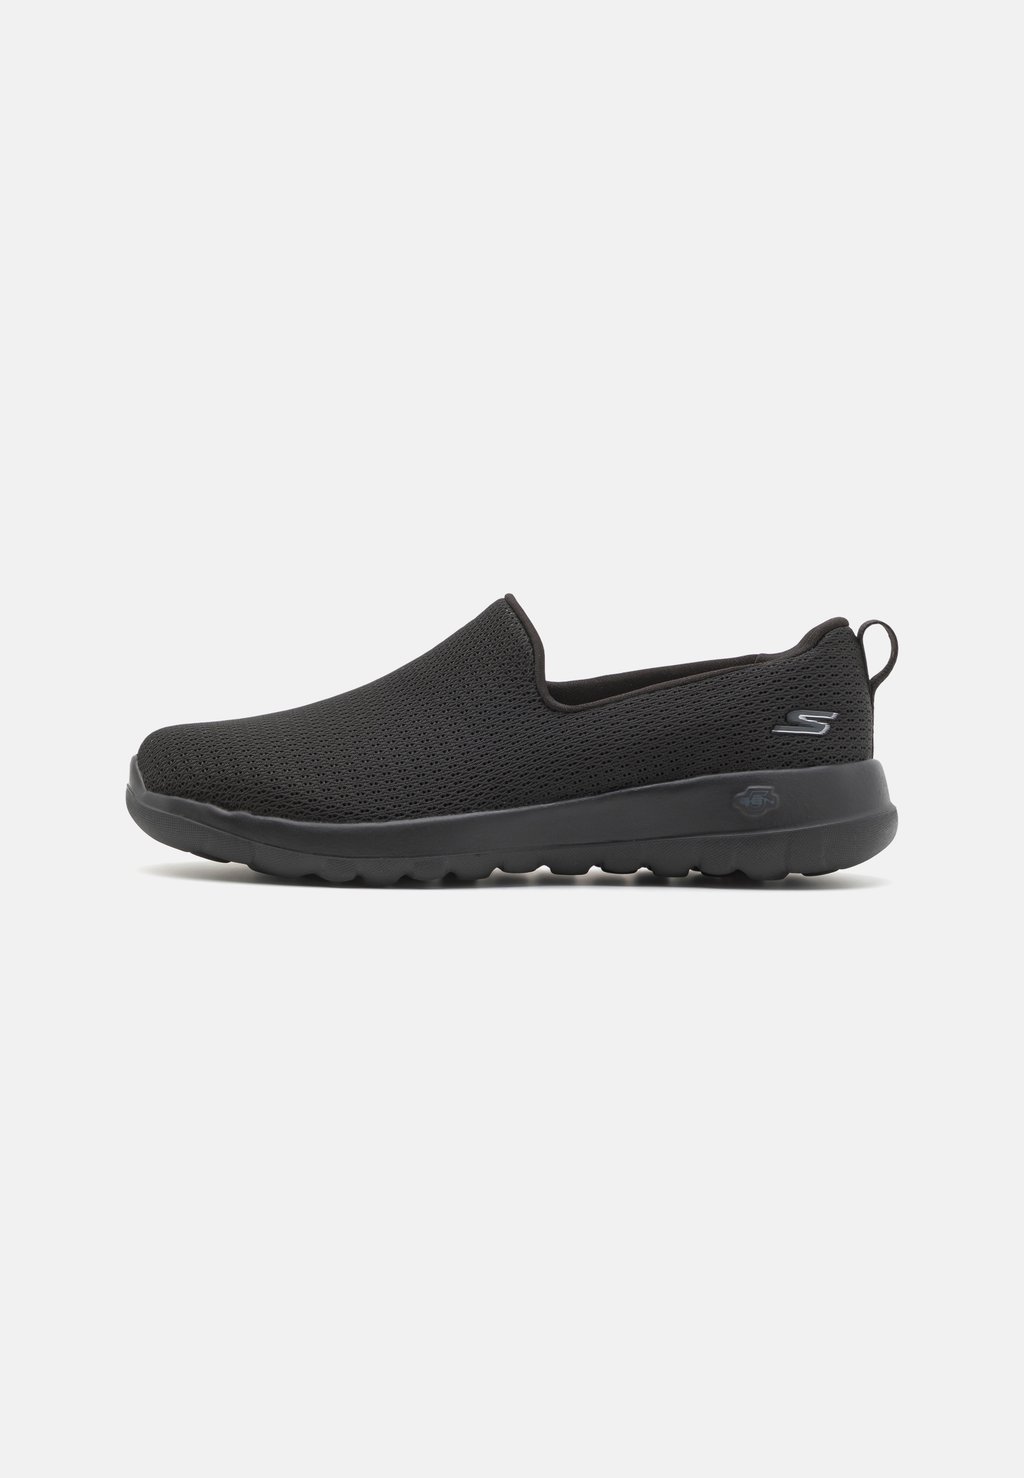 Обувь для ходьбы GO WALK SLIP ON Skechers Performance, цвет black обувь для ходьбы go walk slip on skechers performance цвет black white